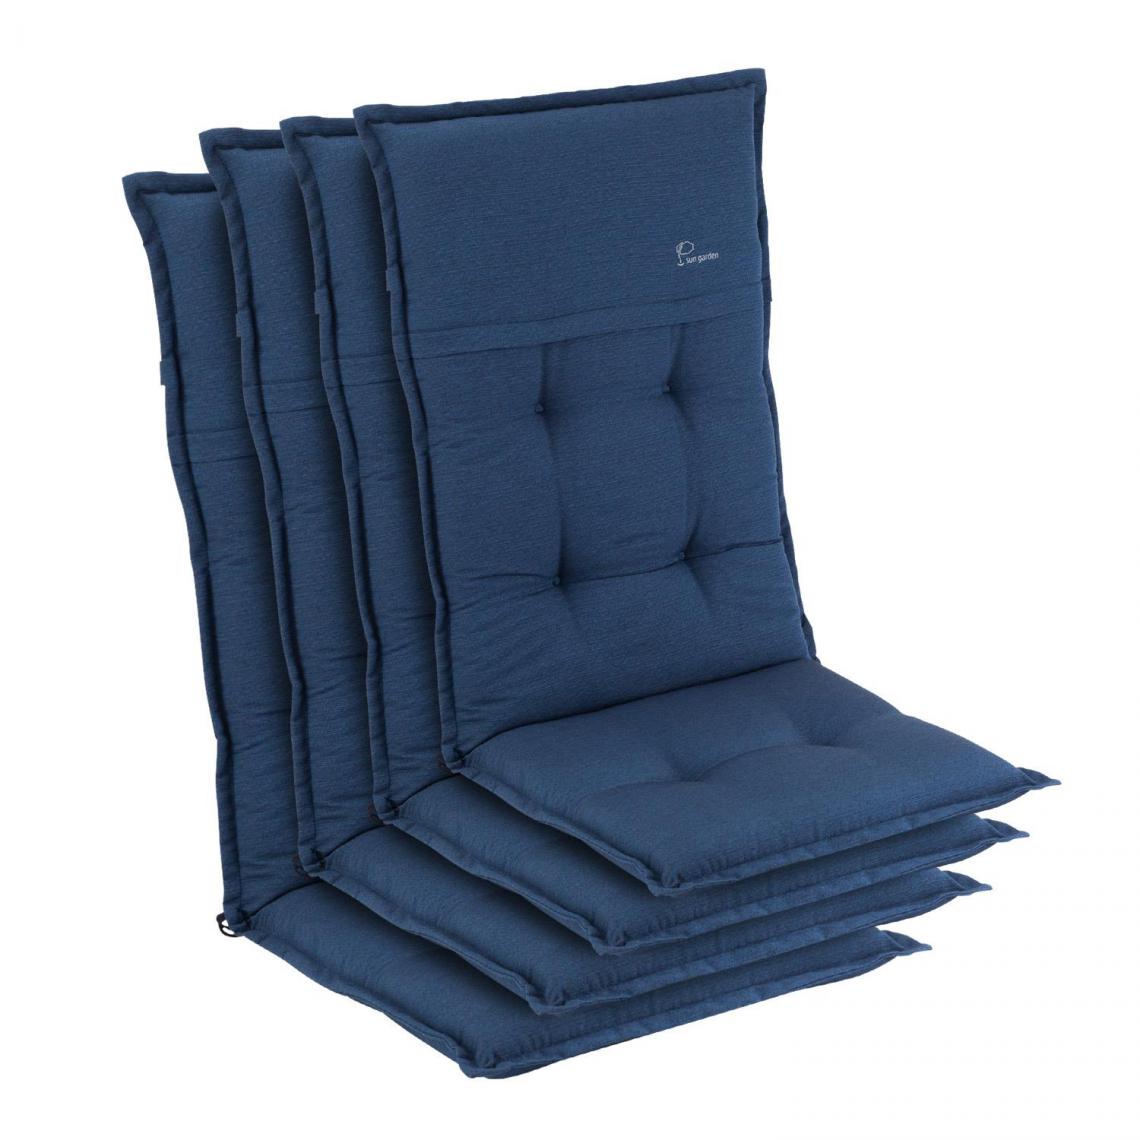 Blumfeldt - Coussin - Blumfeldt Coburg - Pour chaise de jardin à dossier haut - En polyester - 53x117x9 cm - Lot de 4 - Bleu - Coussins, galettes de jardin